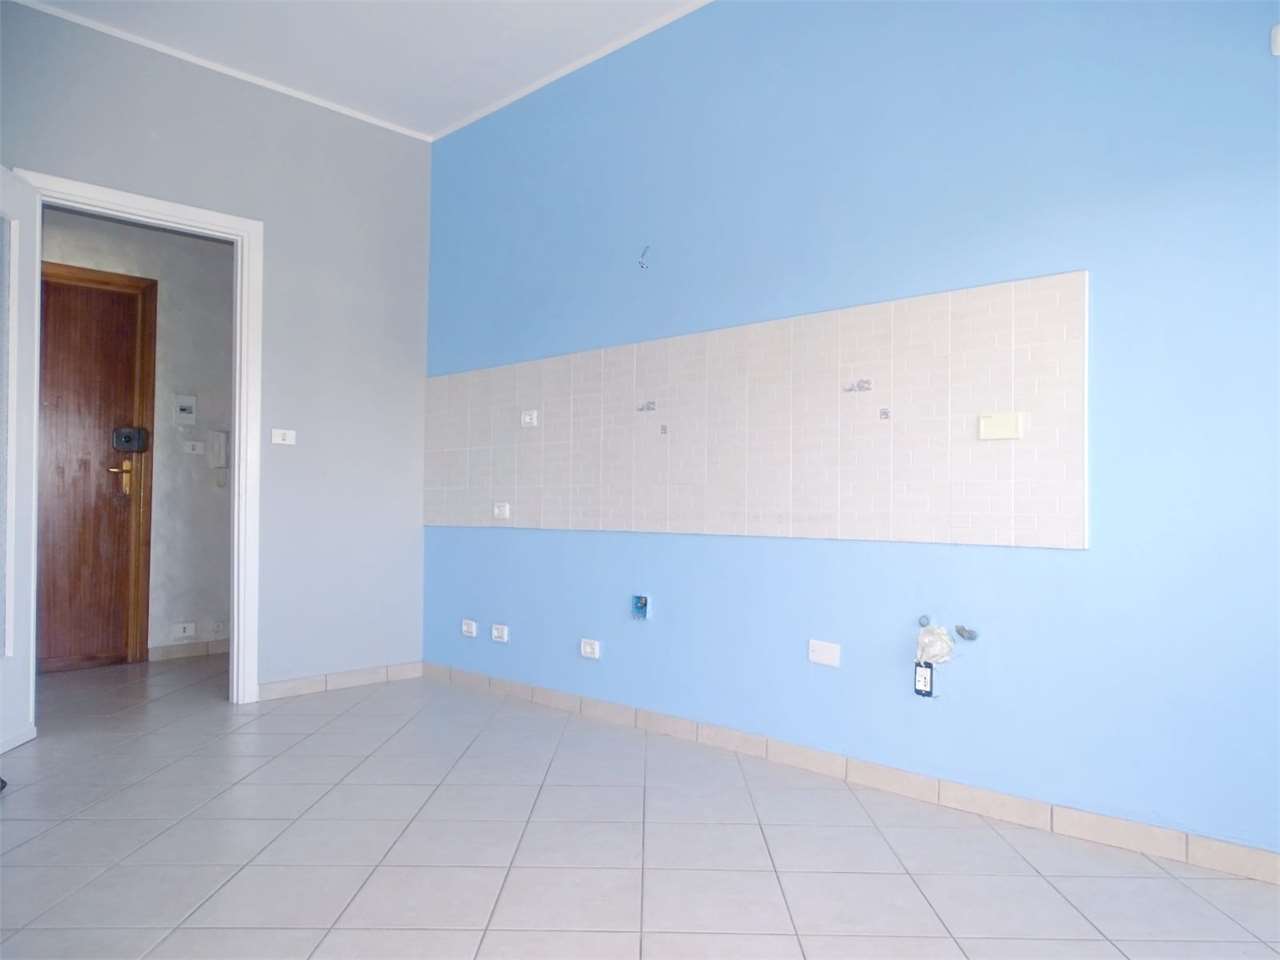 Appartamento in affitto a Ciriè, 2 locali, prezzo € 380 | CambioCasa.it